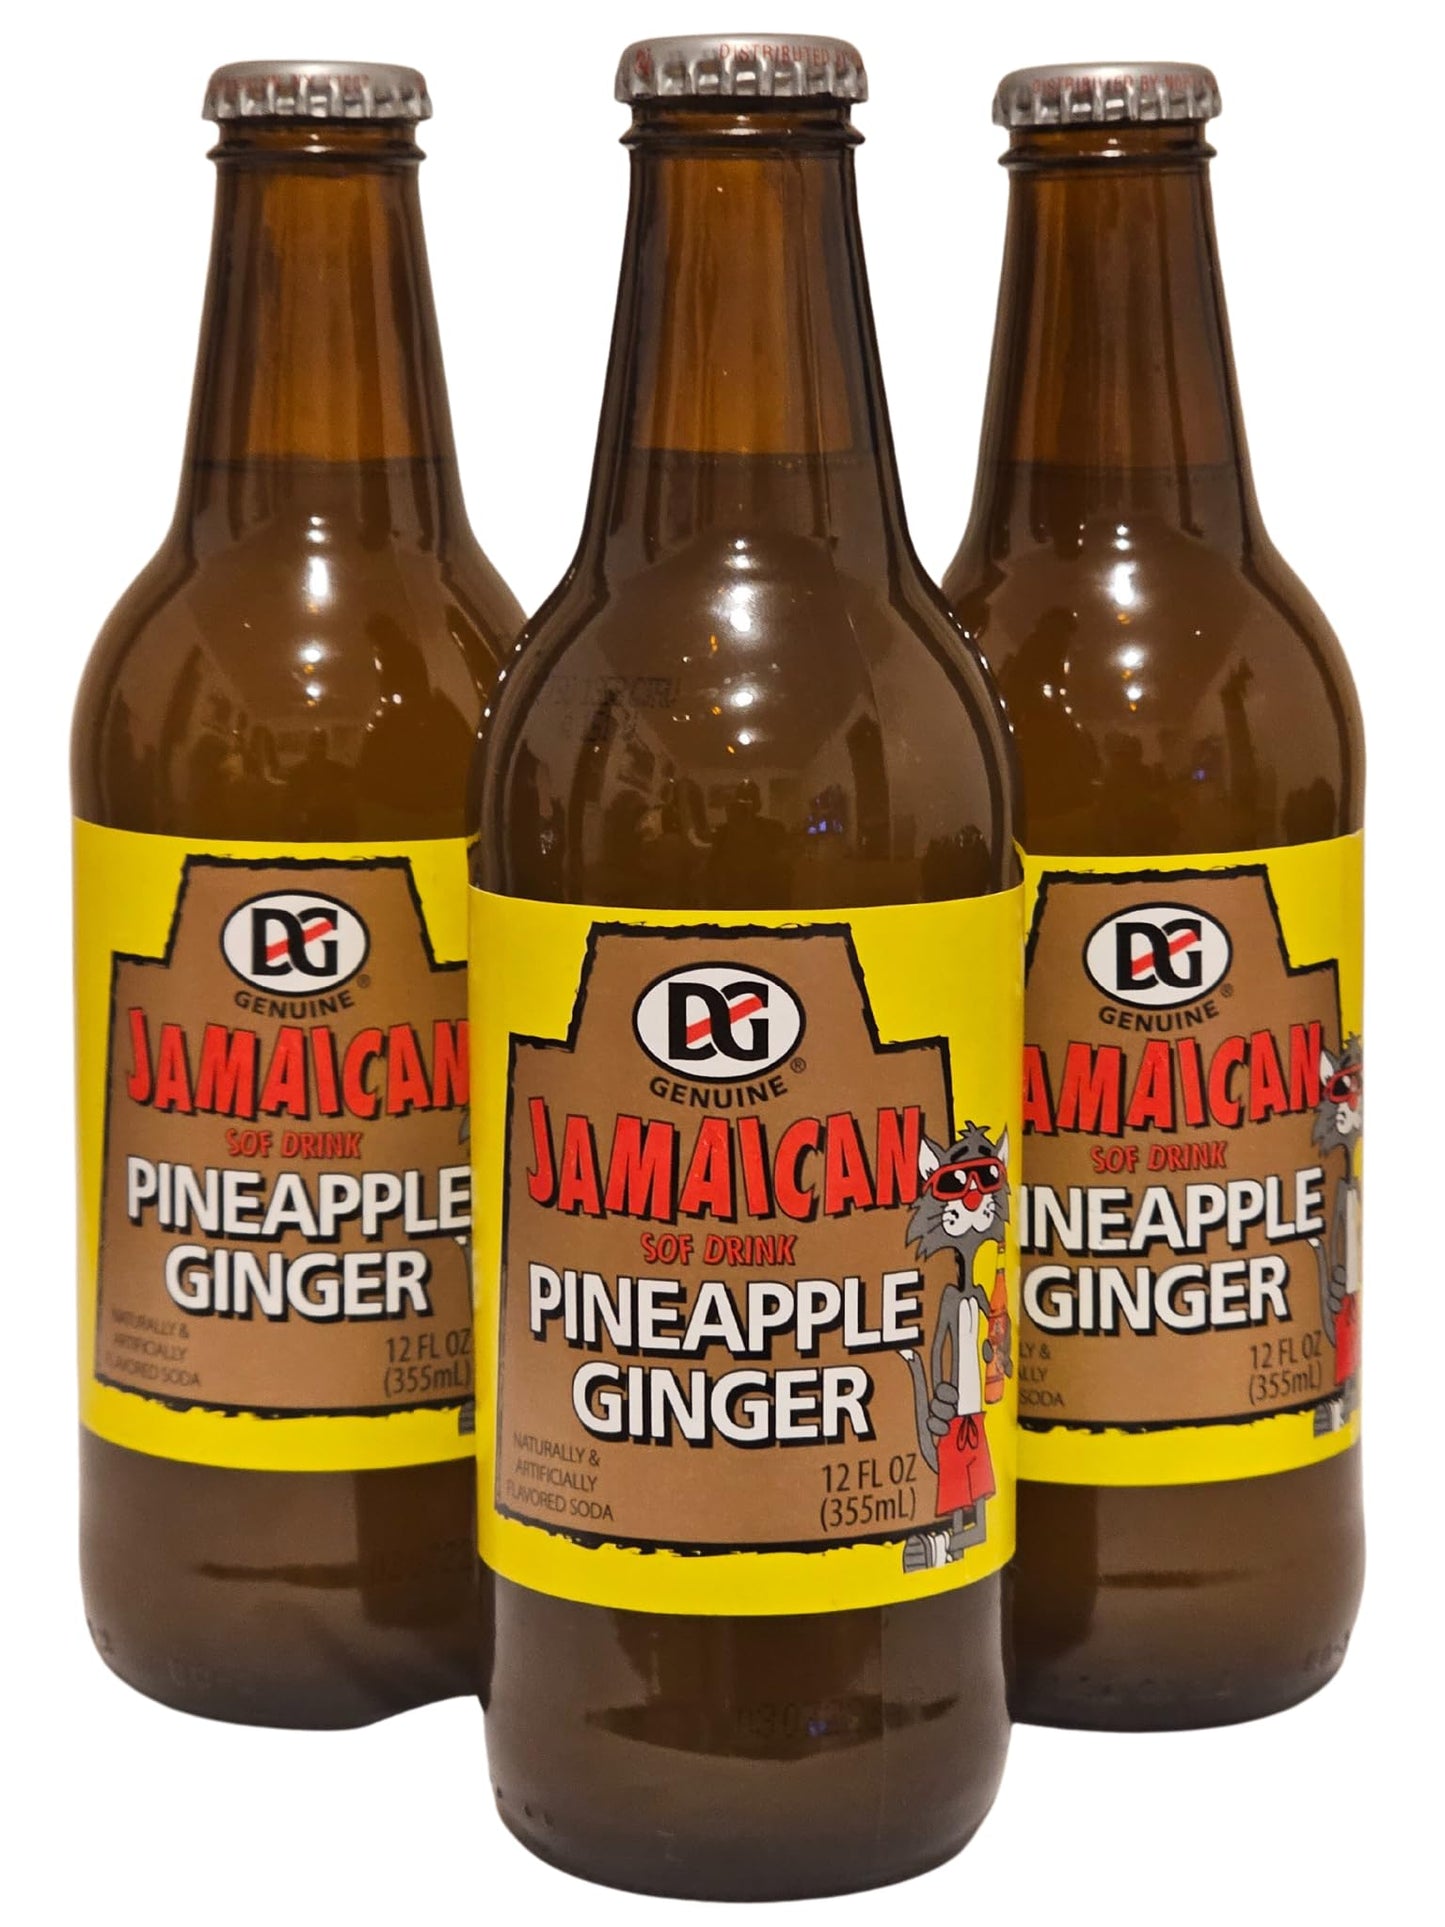 D&G Jamaican "Sof Drink" Genuine Glass Bottles 3pk (Pineapple Ginger, 12 fl oz)